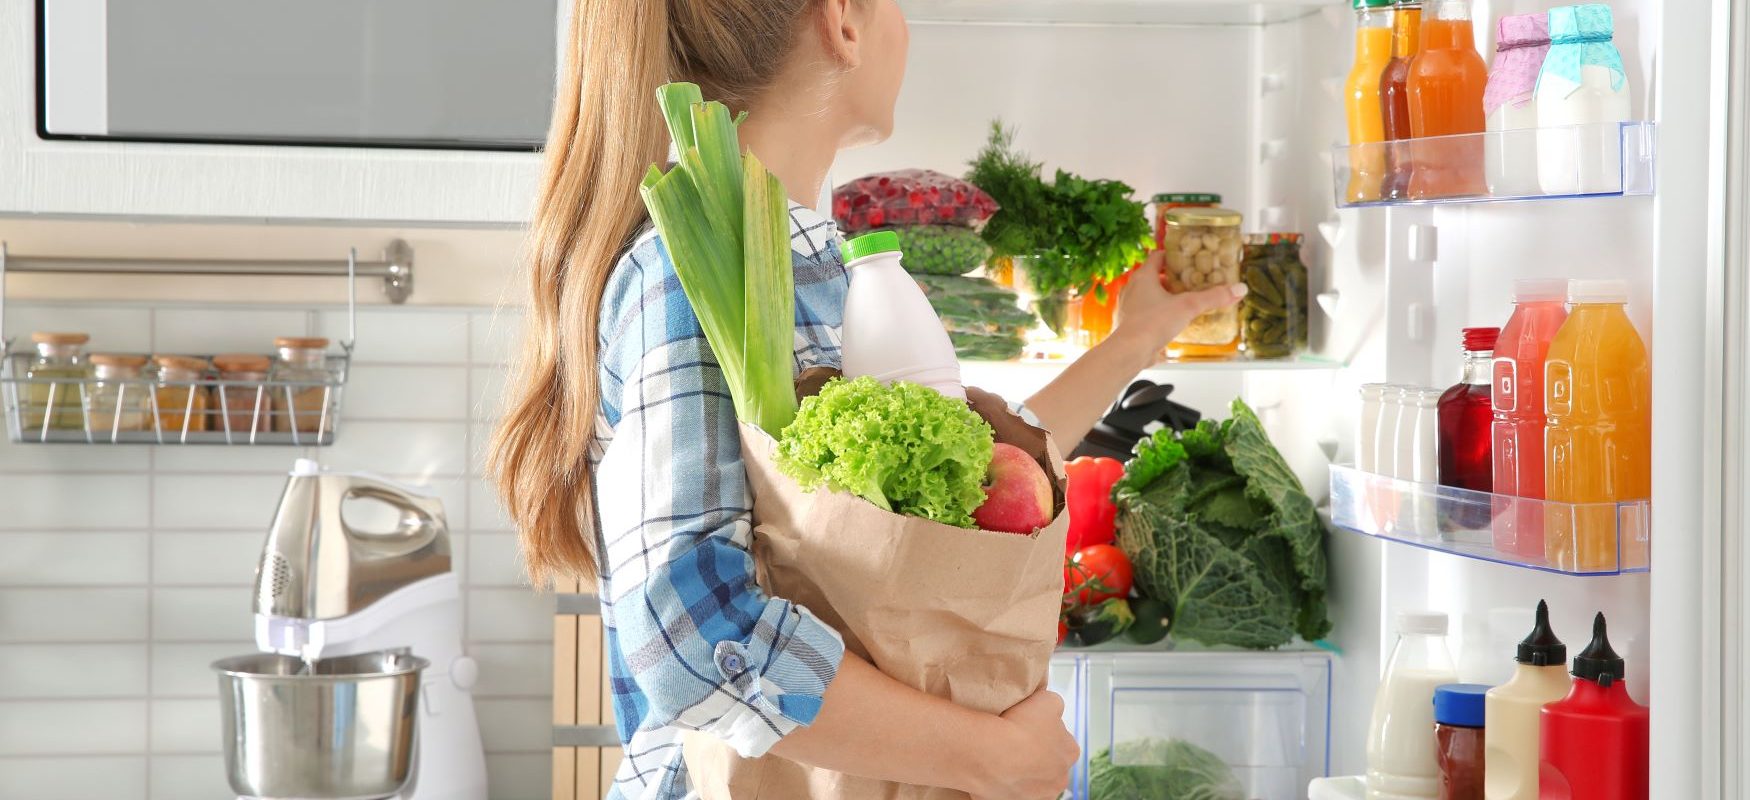 Jak nie marnować jedzenia? Nurt zero waste w kuchni. Kobieta wkłada zakupy do lodówki.